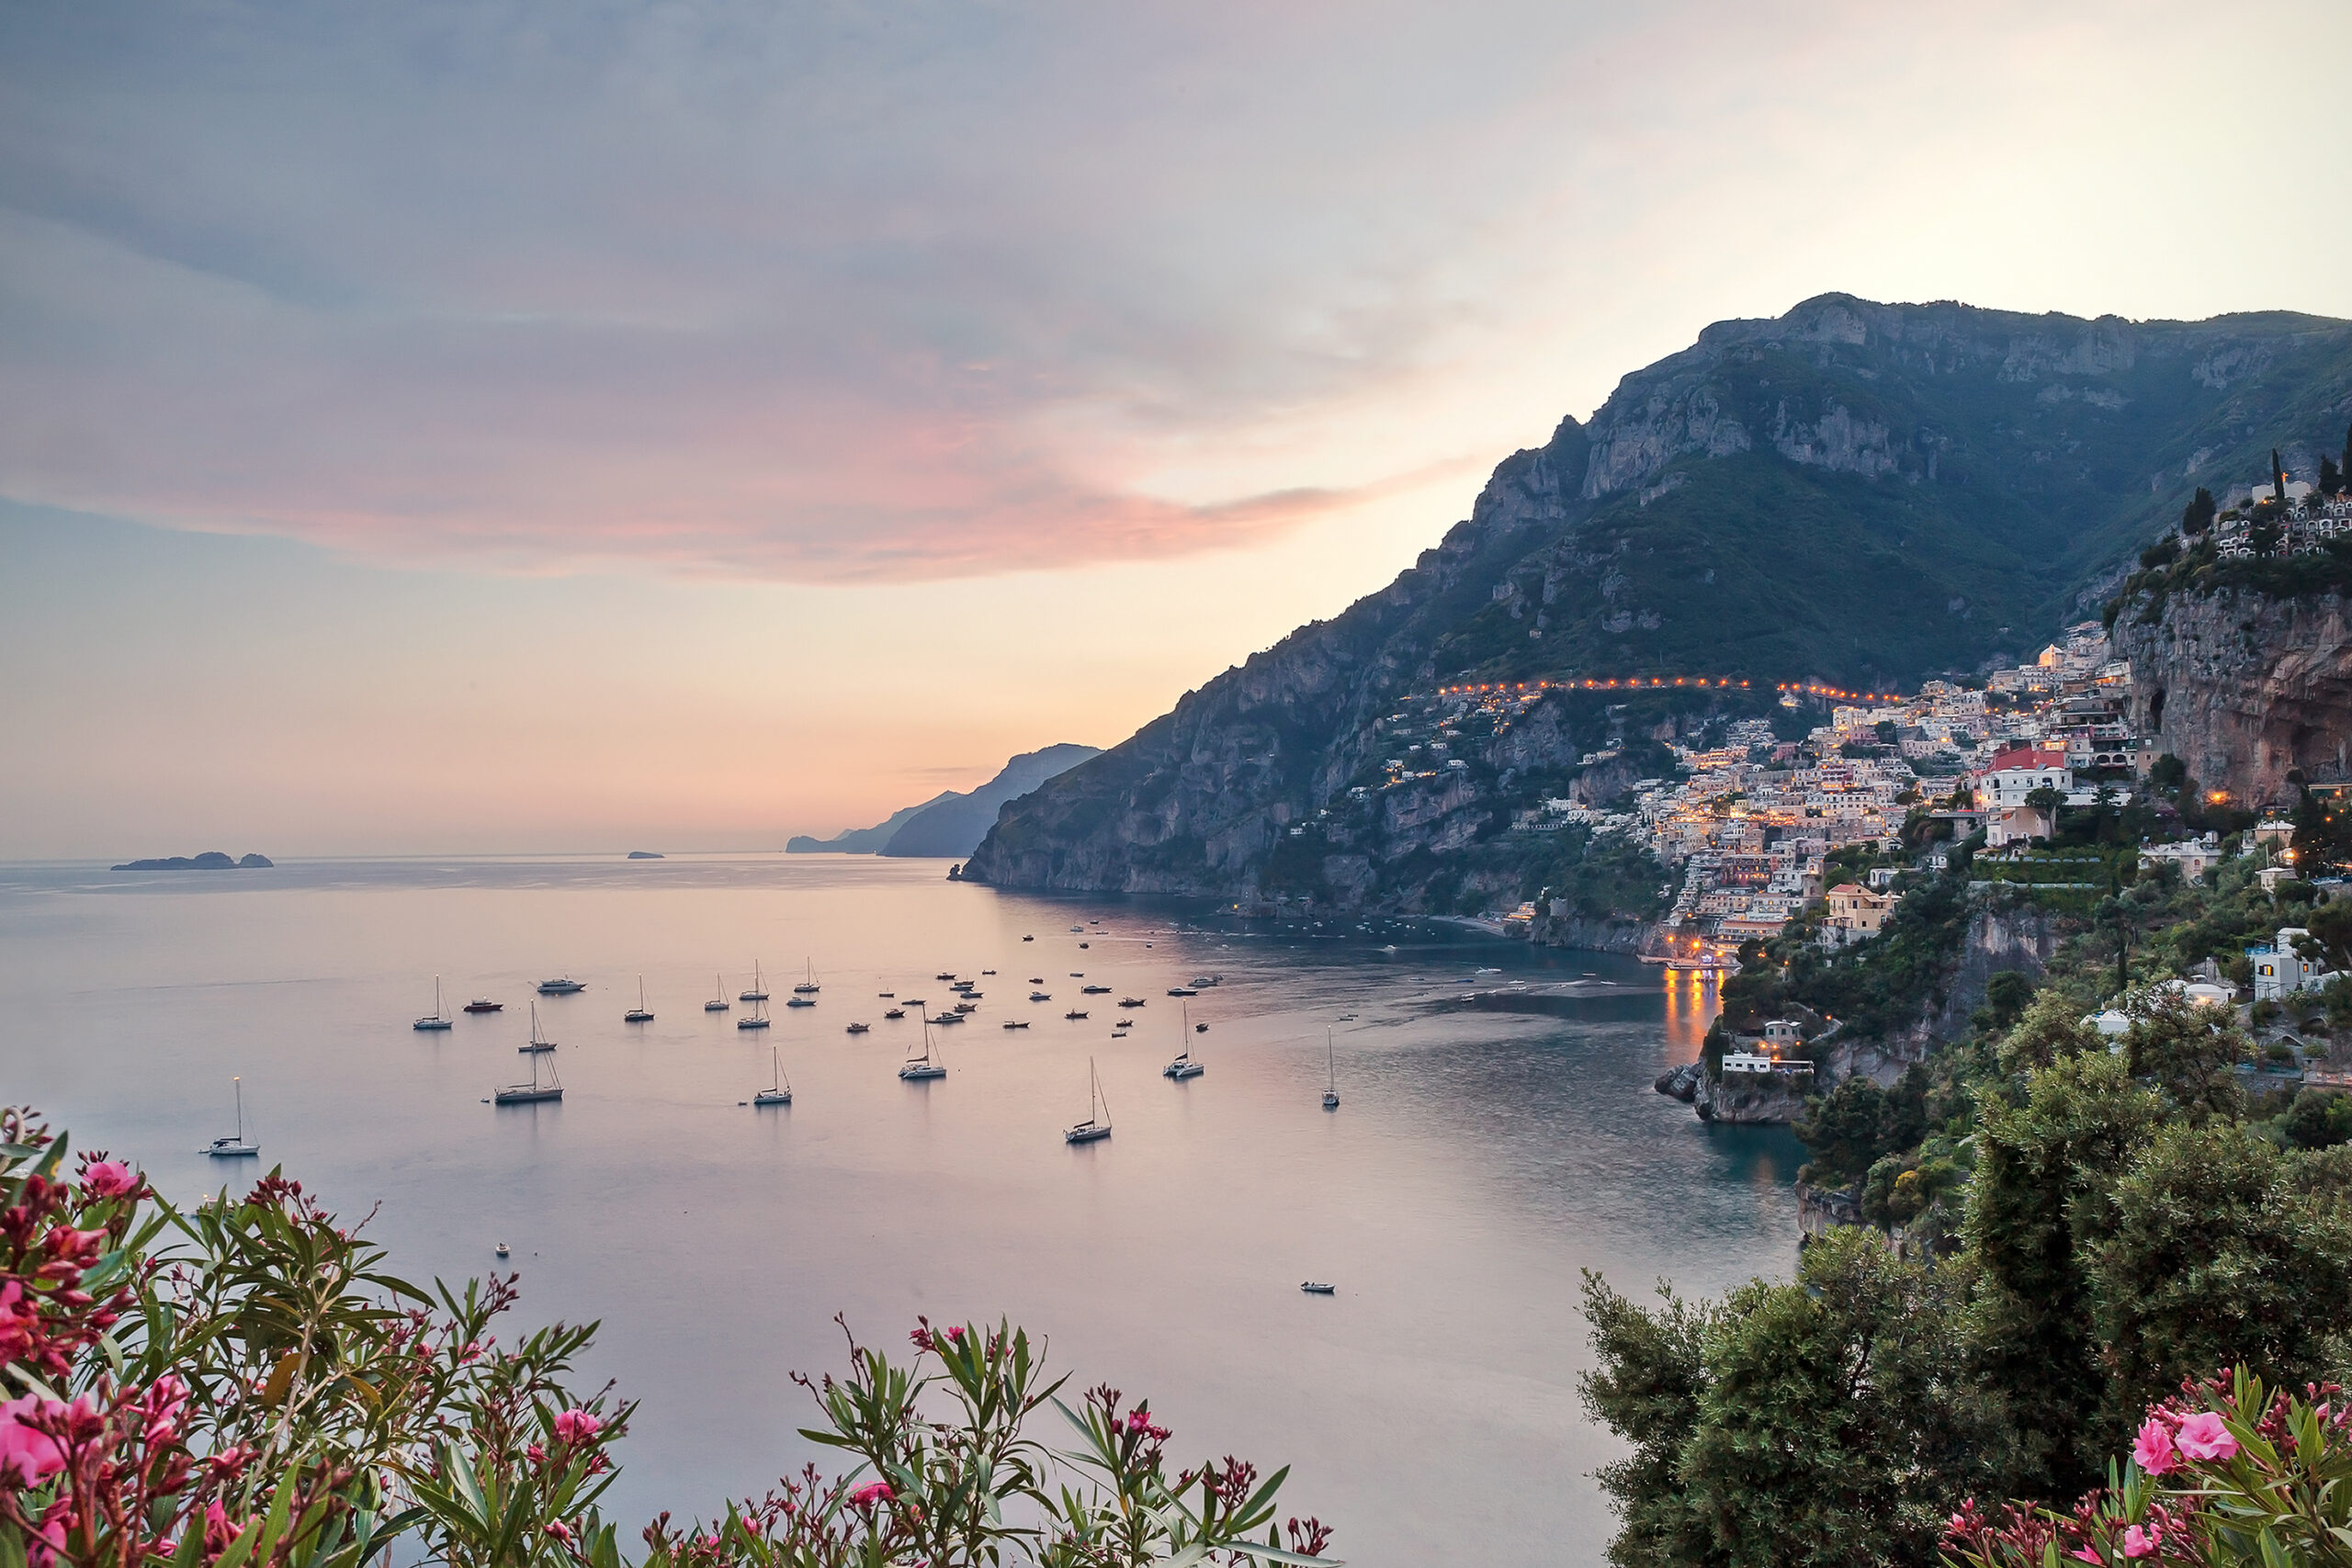 Positano liegt an der malerischen Amalfiküste in Italien und ist eine bezaubernde Küstenstadt, die von Neapel aus leicht zu erreichen ist.  Mit seiner atemberaubenden Aussicht auf die Klippen und der bezaubernden mediterranen Atmosphäre